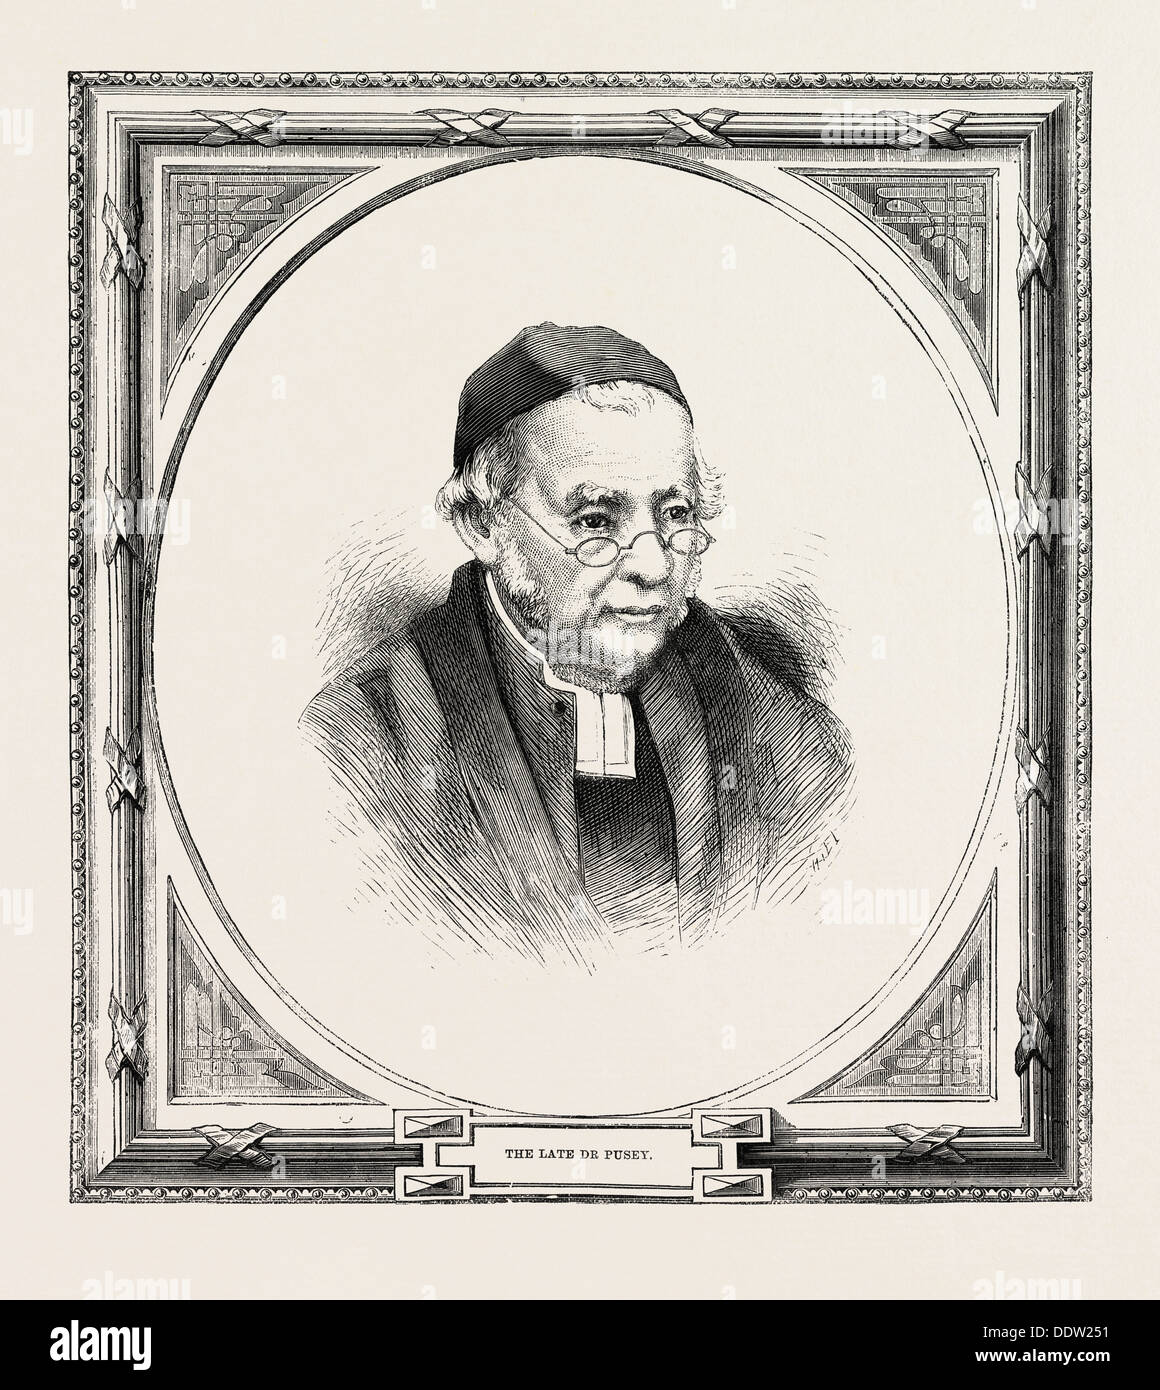 Edward Bouverie Pusey 22 Août 1800 - 16 septembre 1882 était un homme d'anglais et professeur d'hébreu Banque D'Images